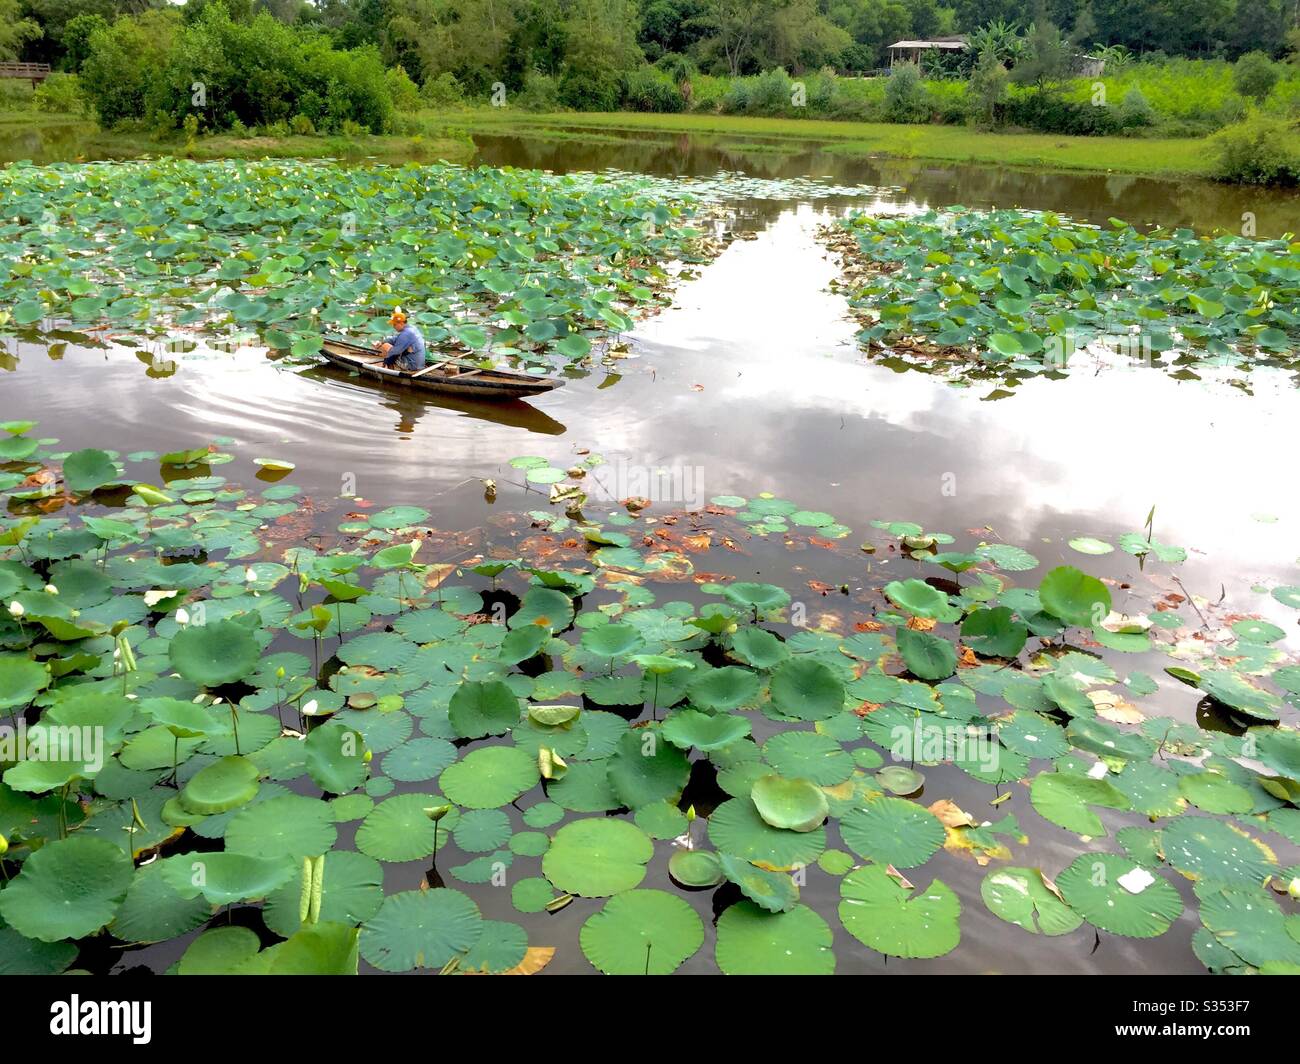 Catch fish on lotus lake Stock Photo